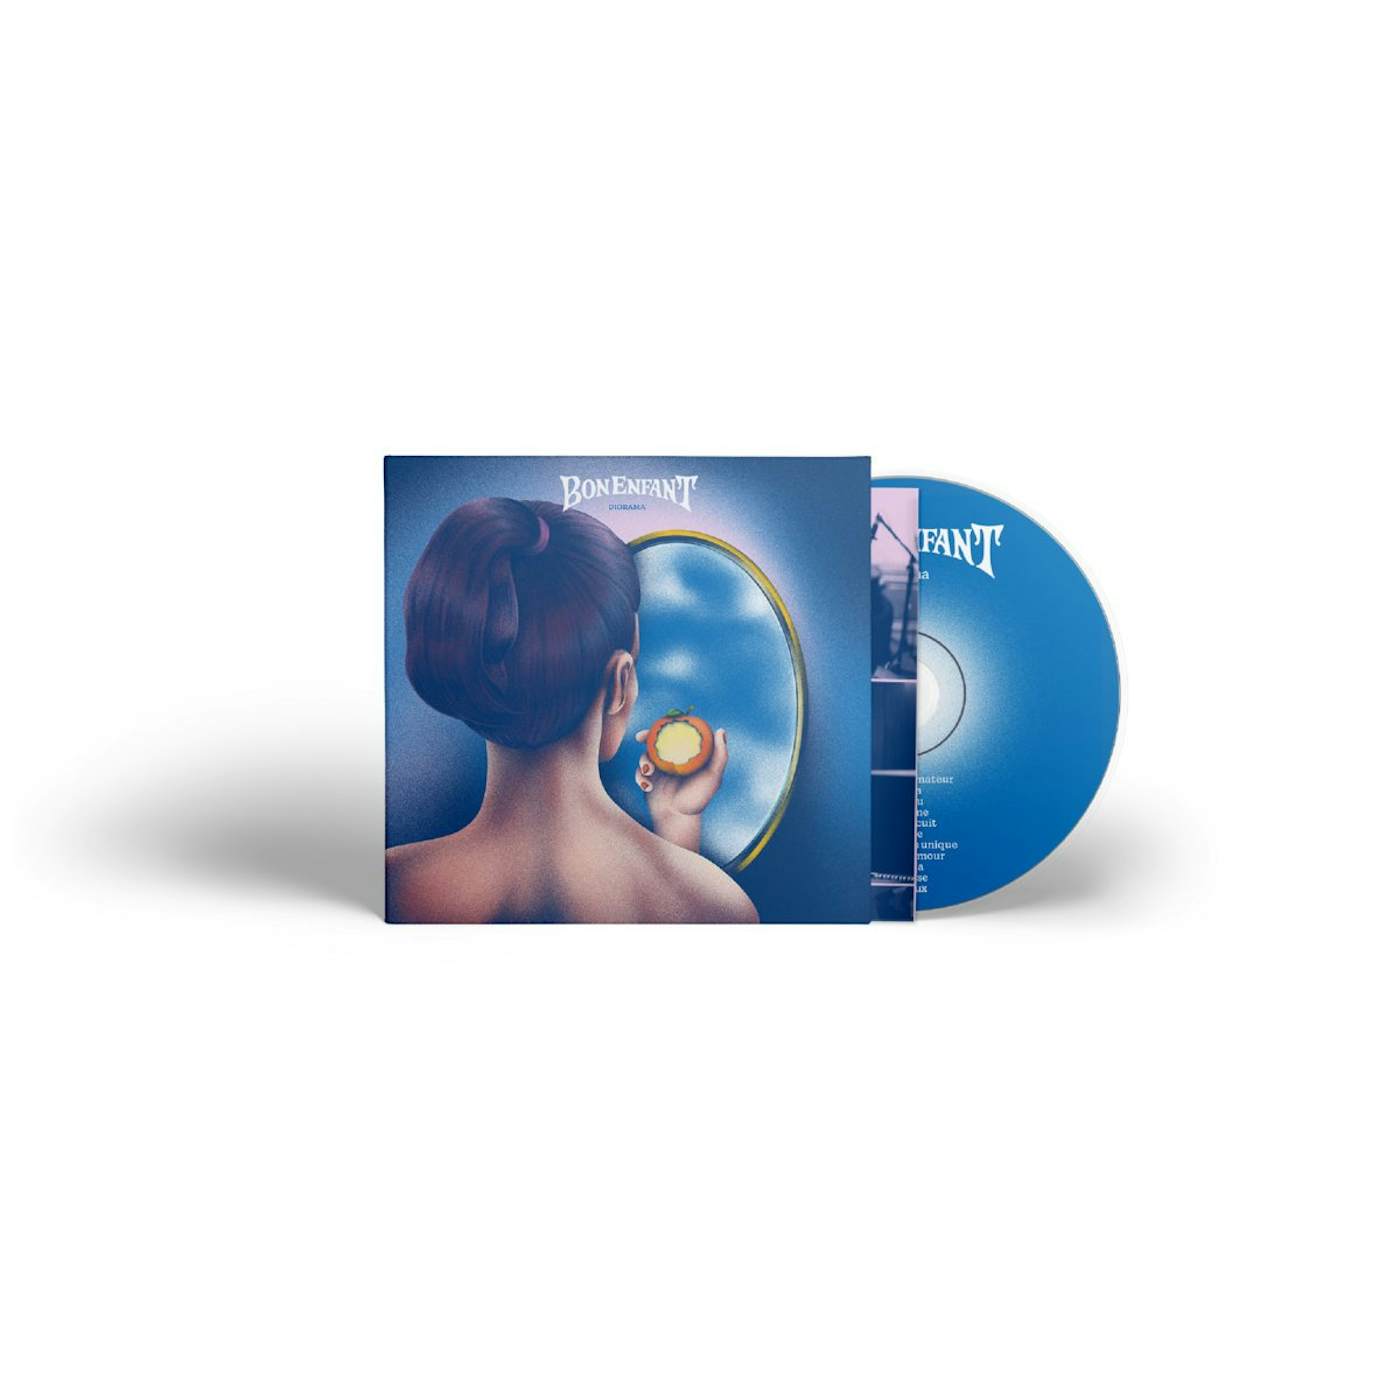 Bon Enfant / Diorama - CD